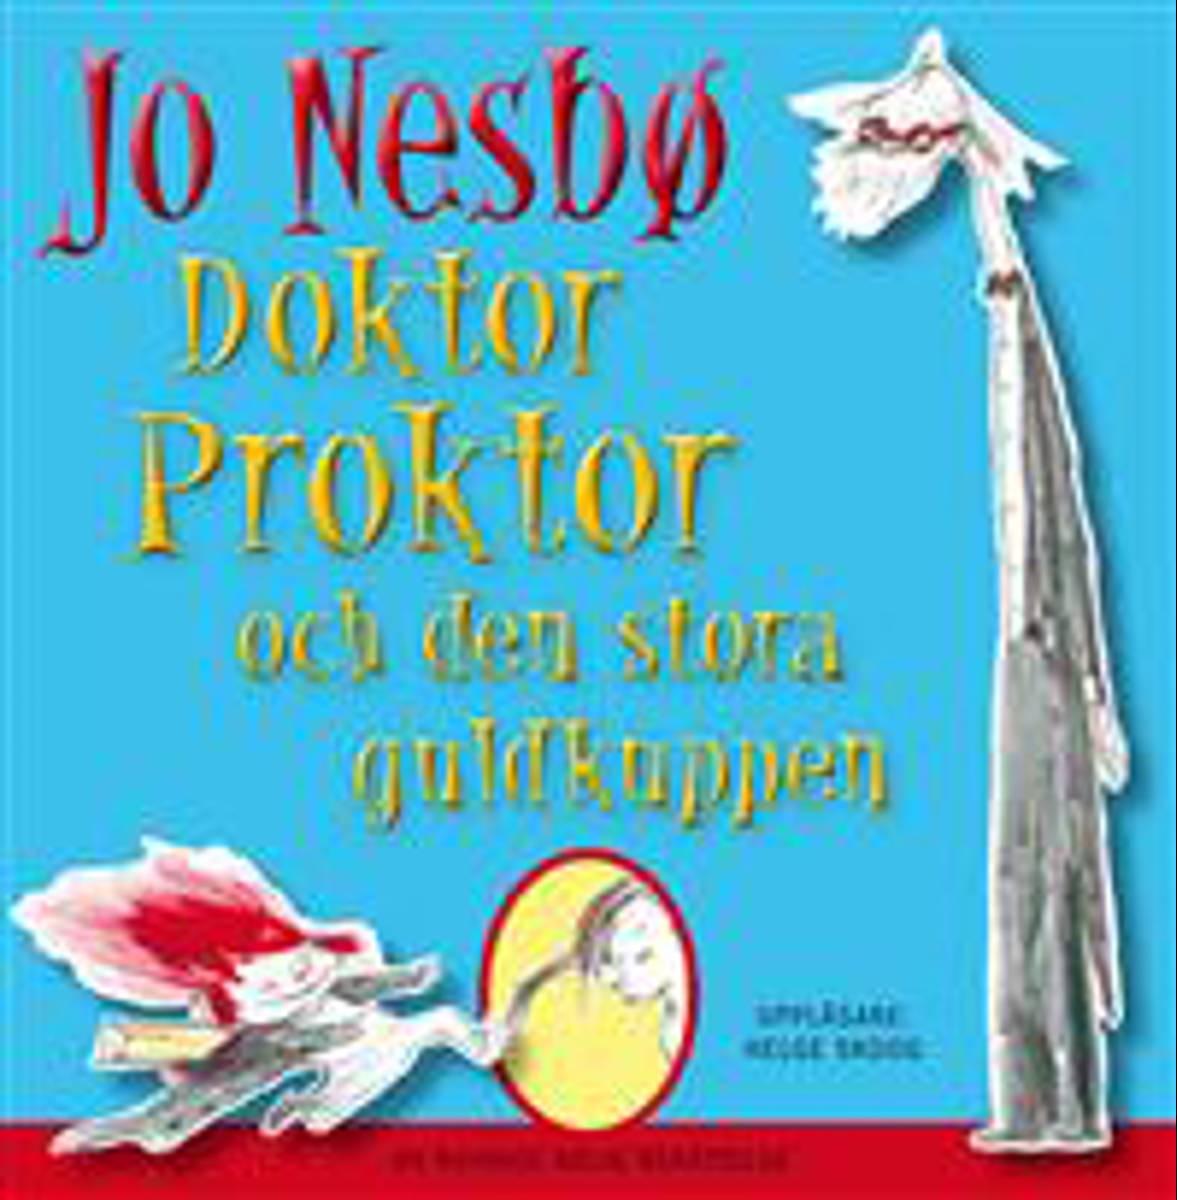 Doktor Proktor och den stora guldkuppen av Jo Nesbø